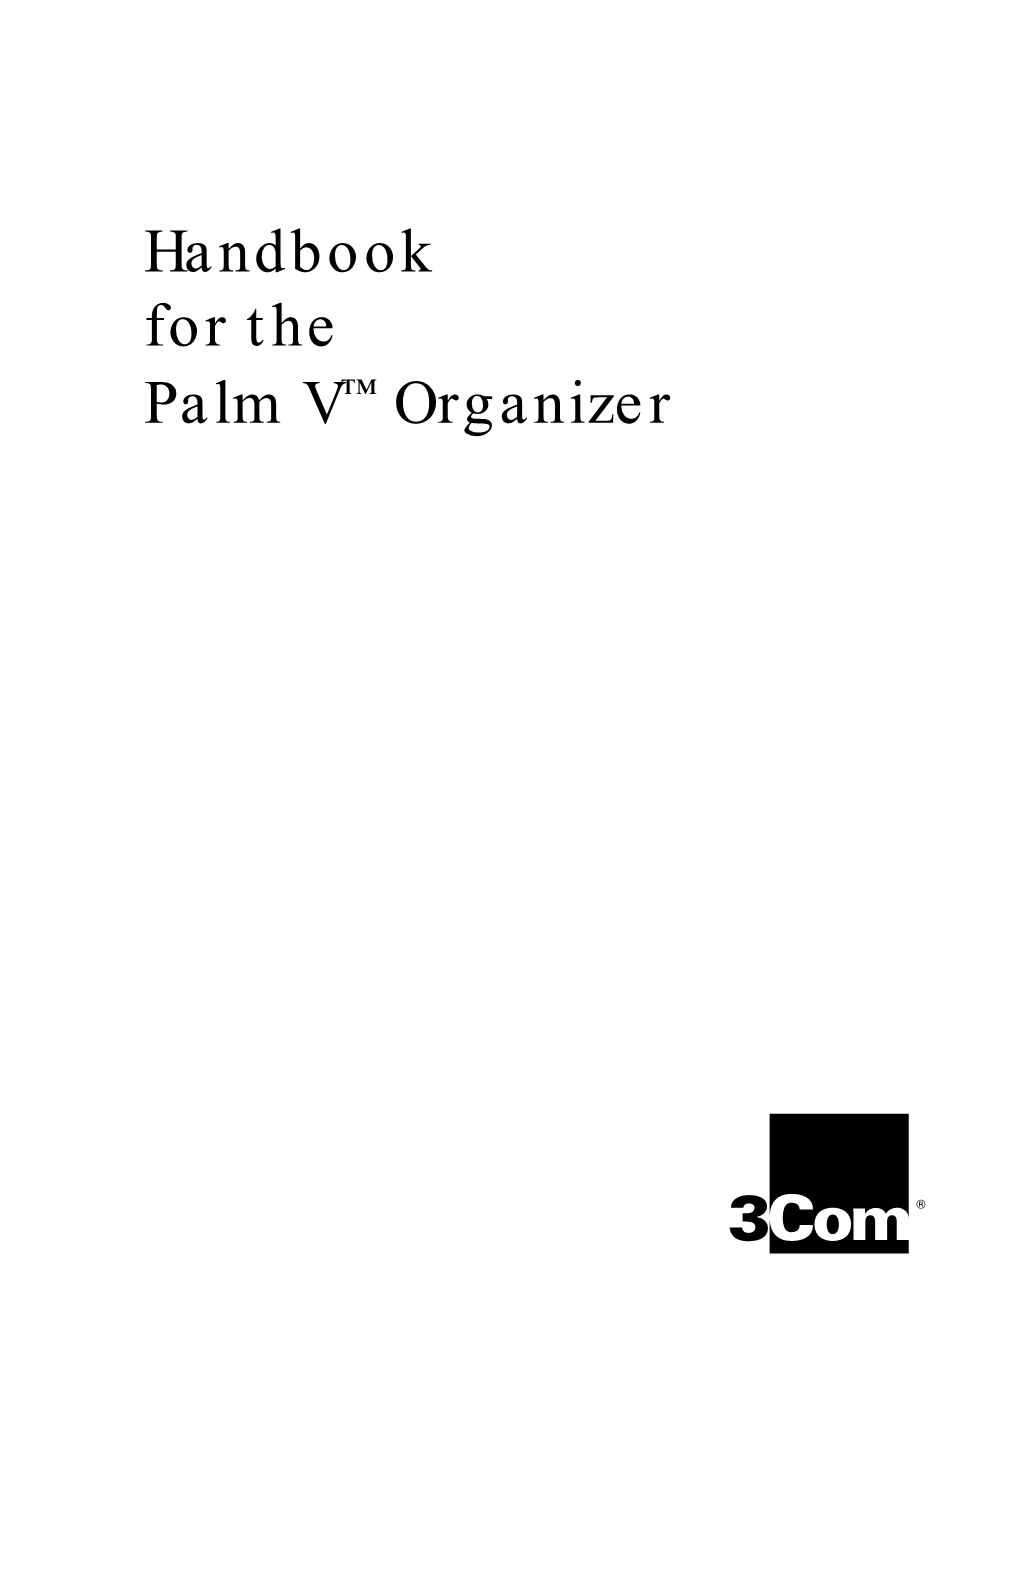 Handbook for the Palm V™ Organizer Copyright